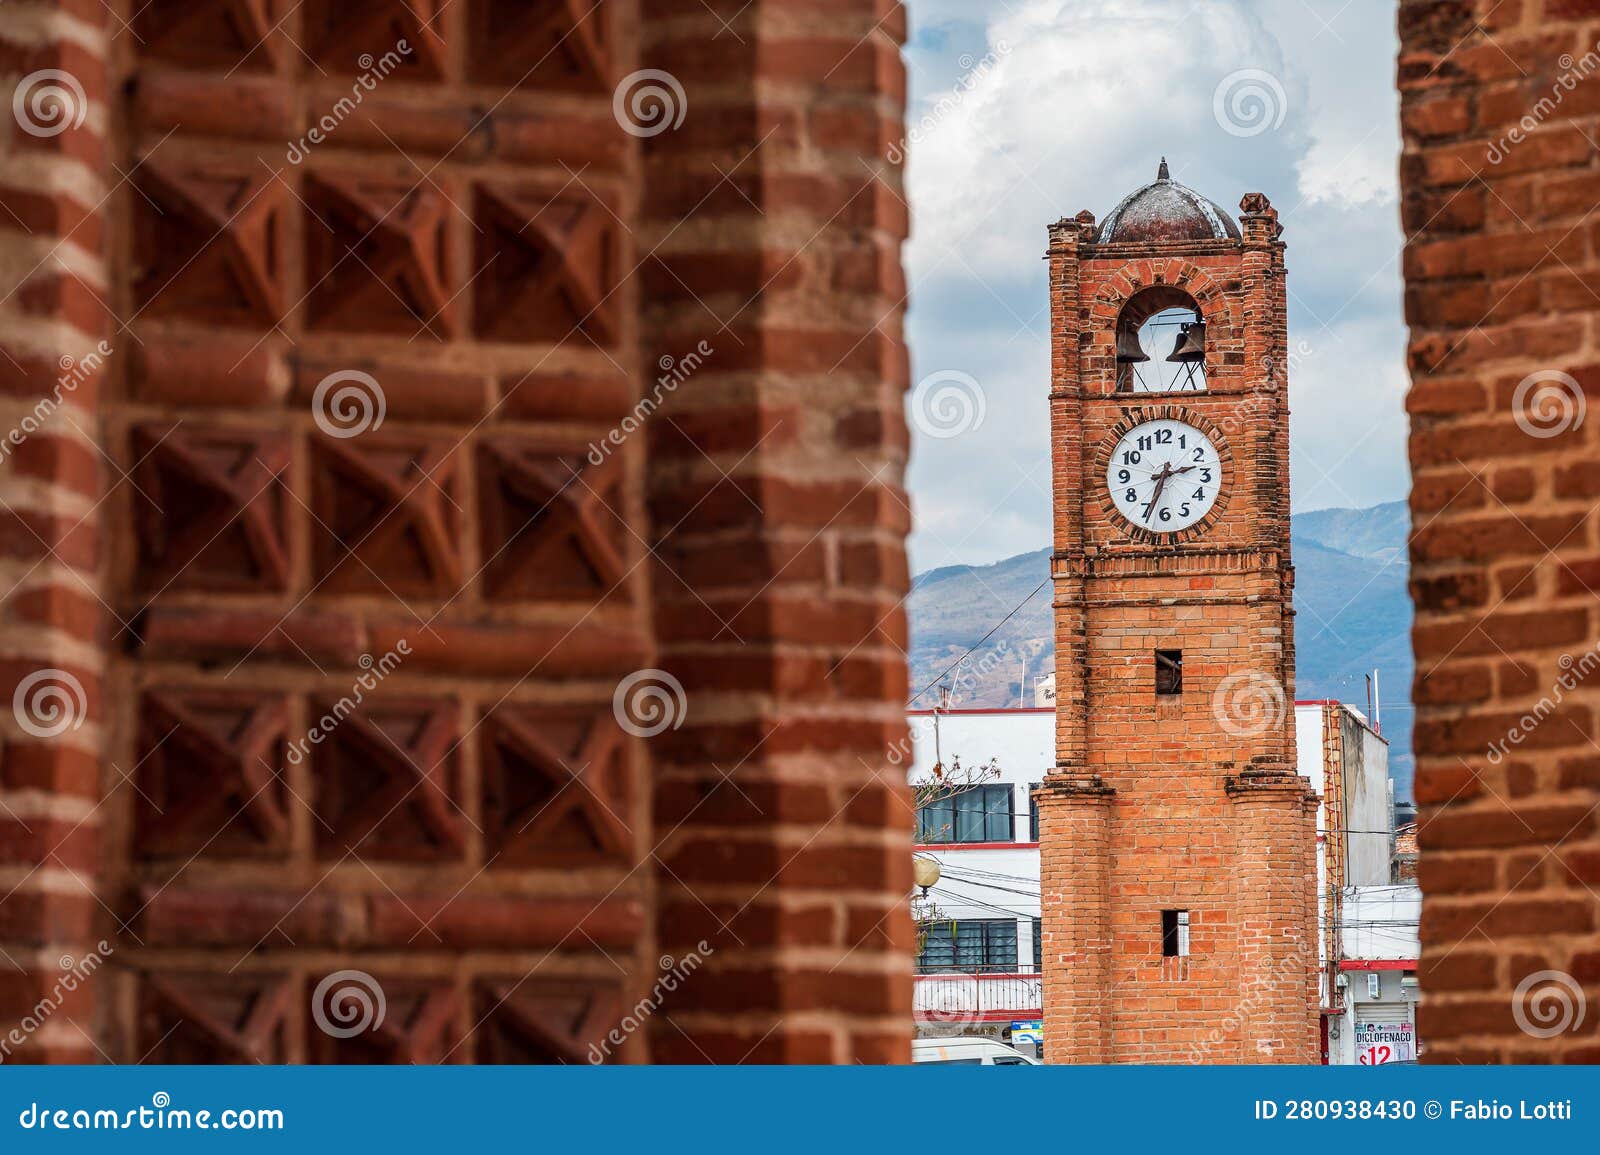 clock tower in chiapa de corzo